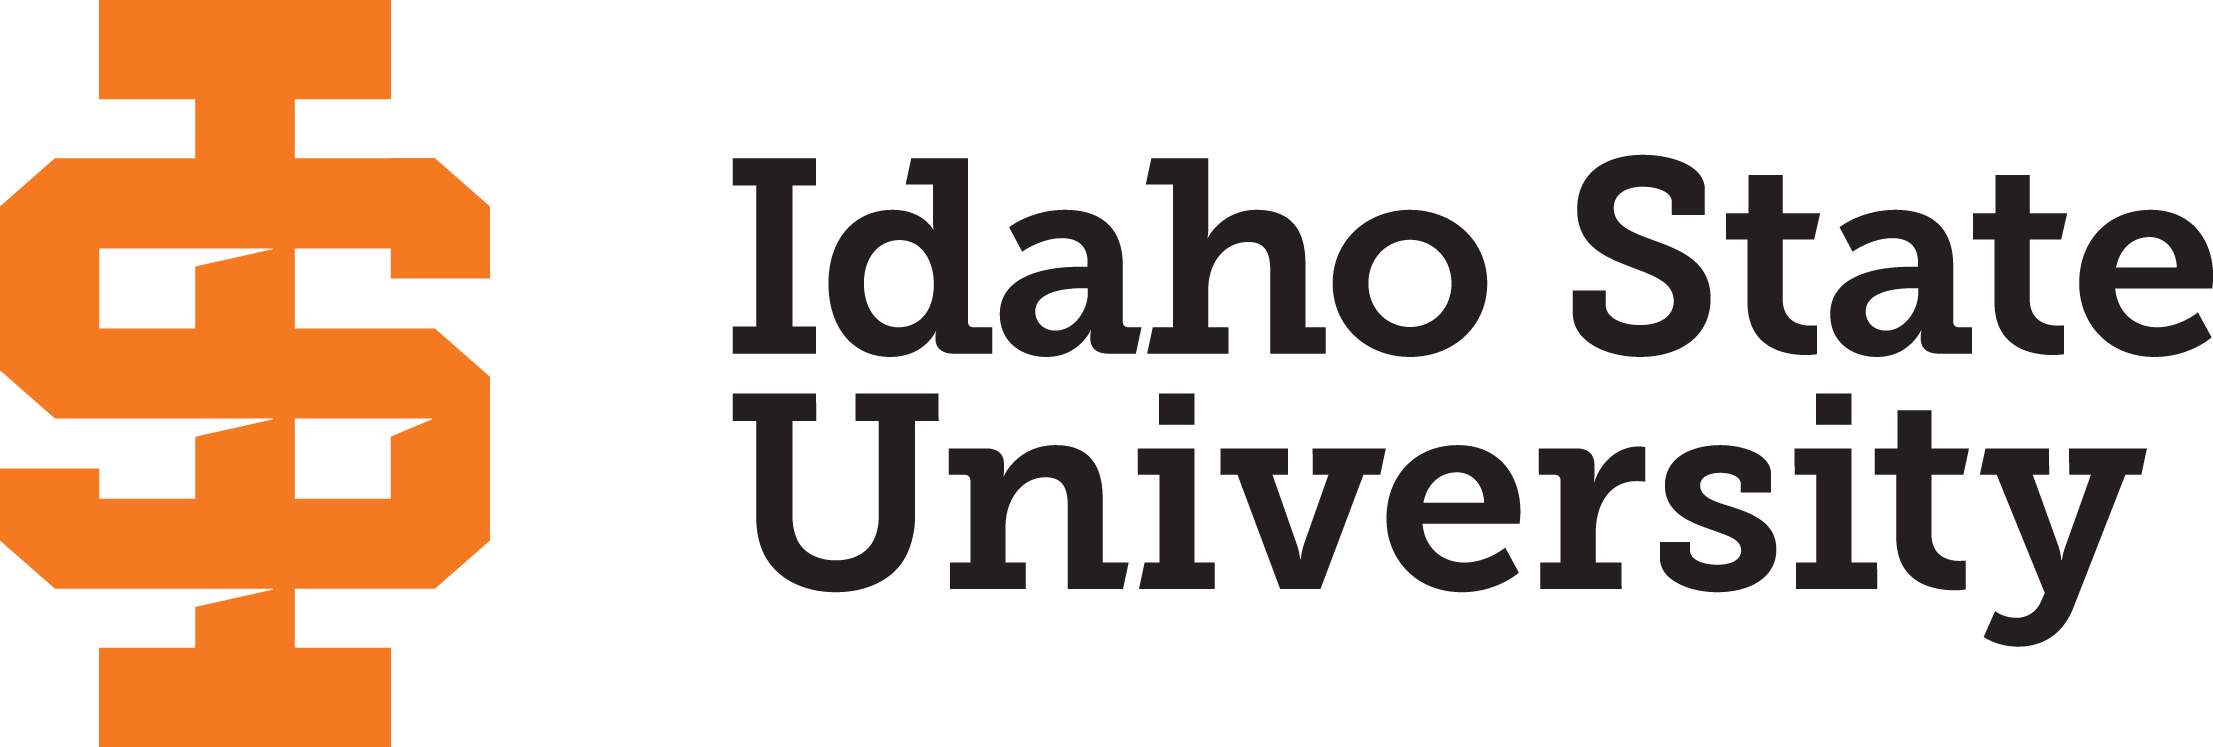 Image of Idaho State University's logo